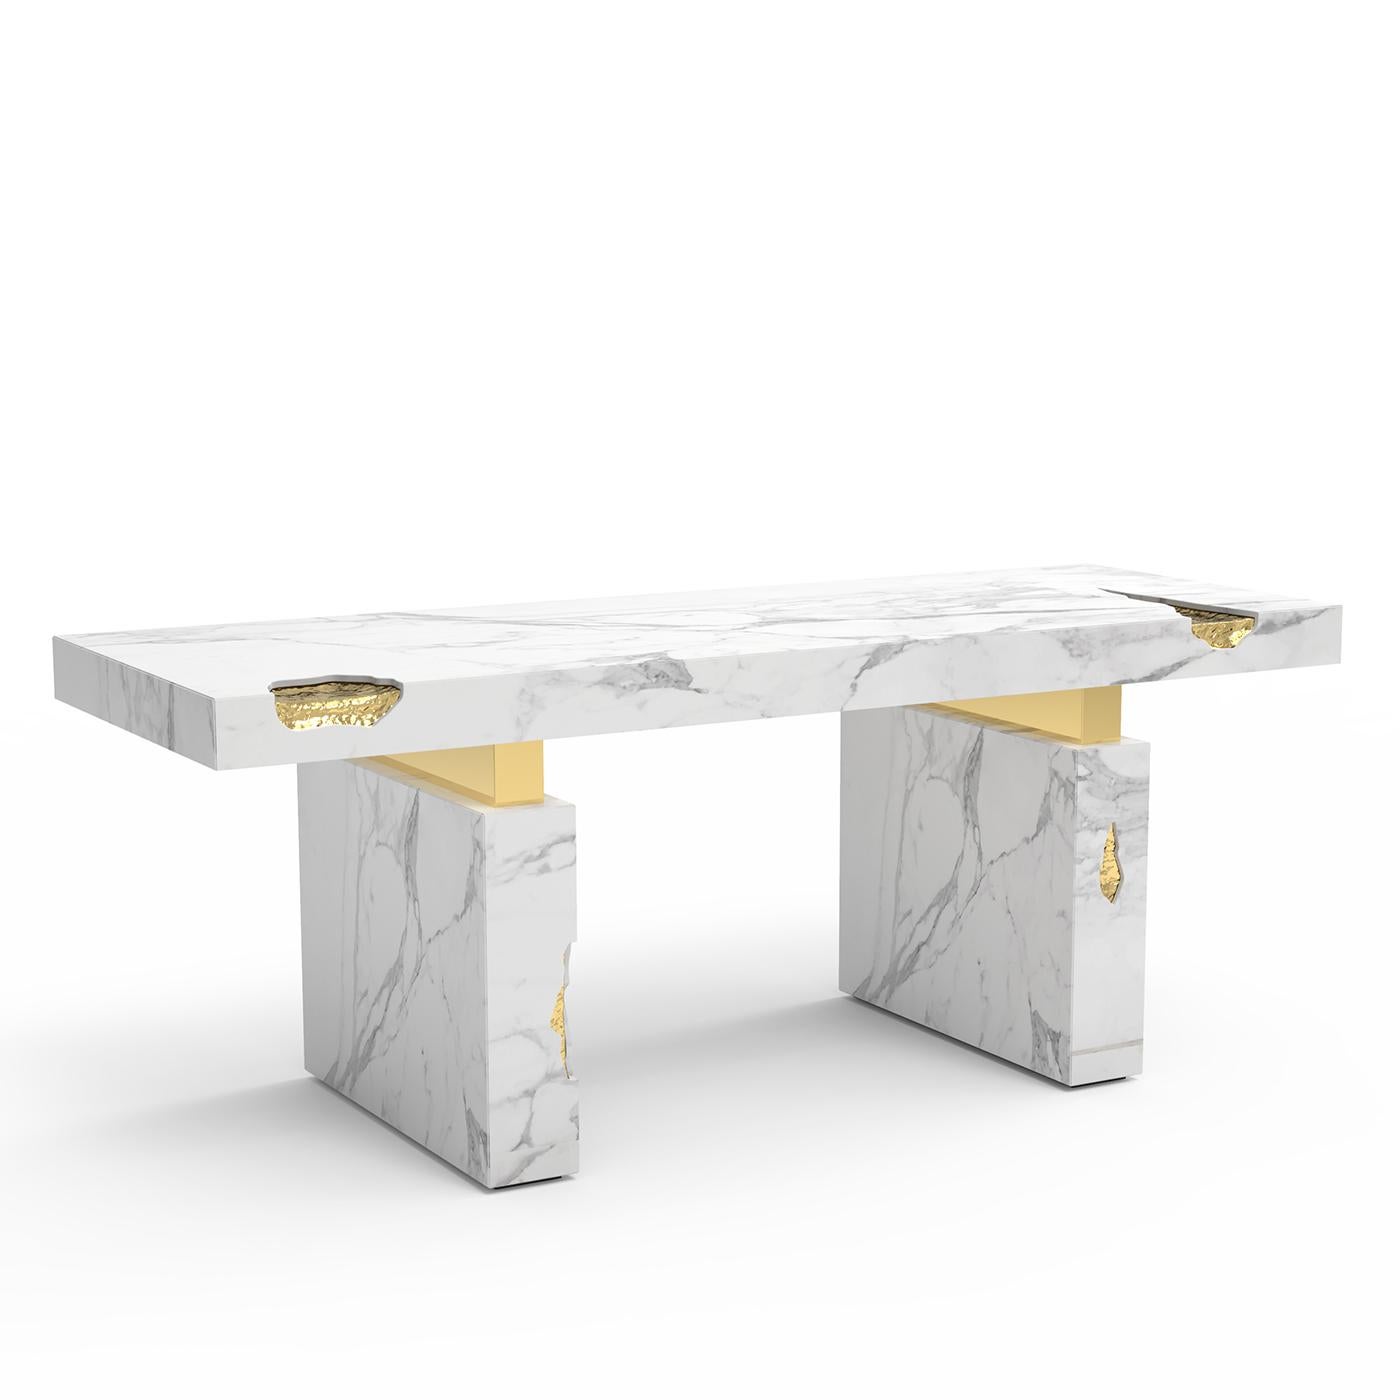 Schreibtisch majestätisch weiß mit 2 Sockeln und Platte aus massivem
polierter weißer Estremoz-Marmor mit massivem Messing 
details in Goldoptik.